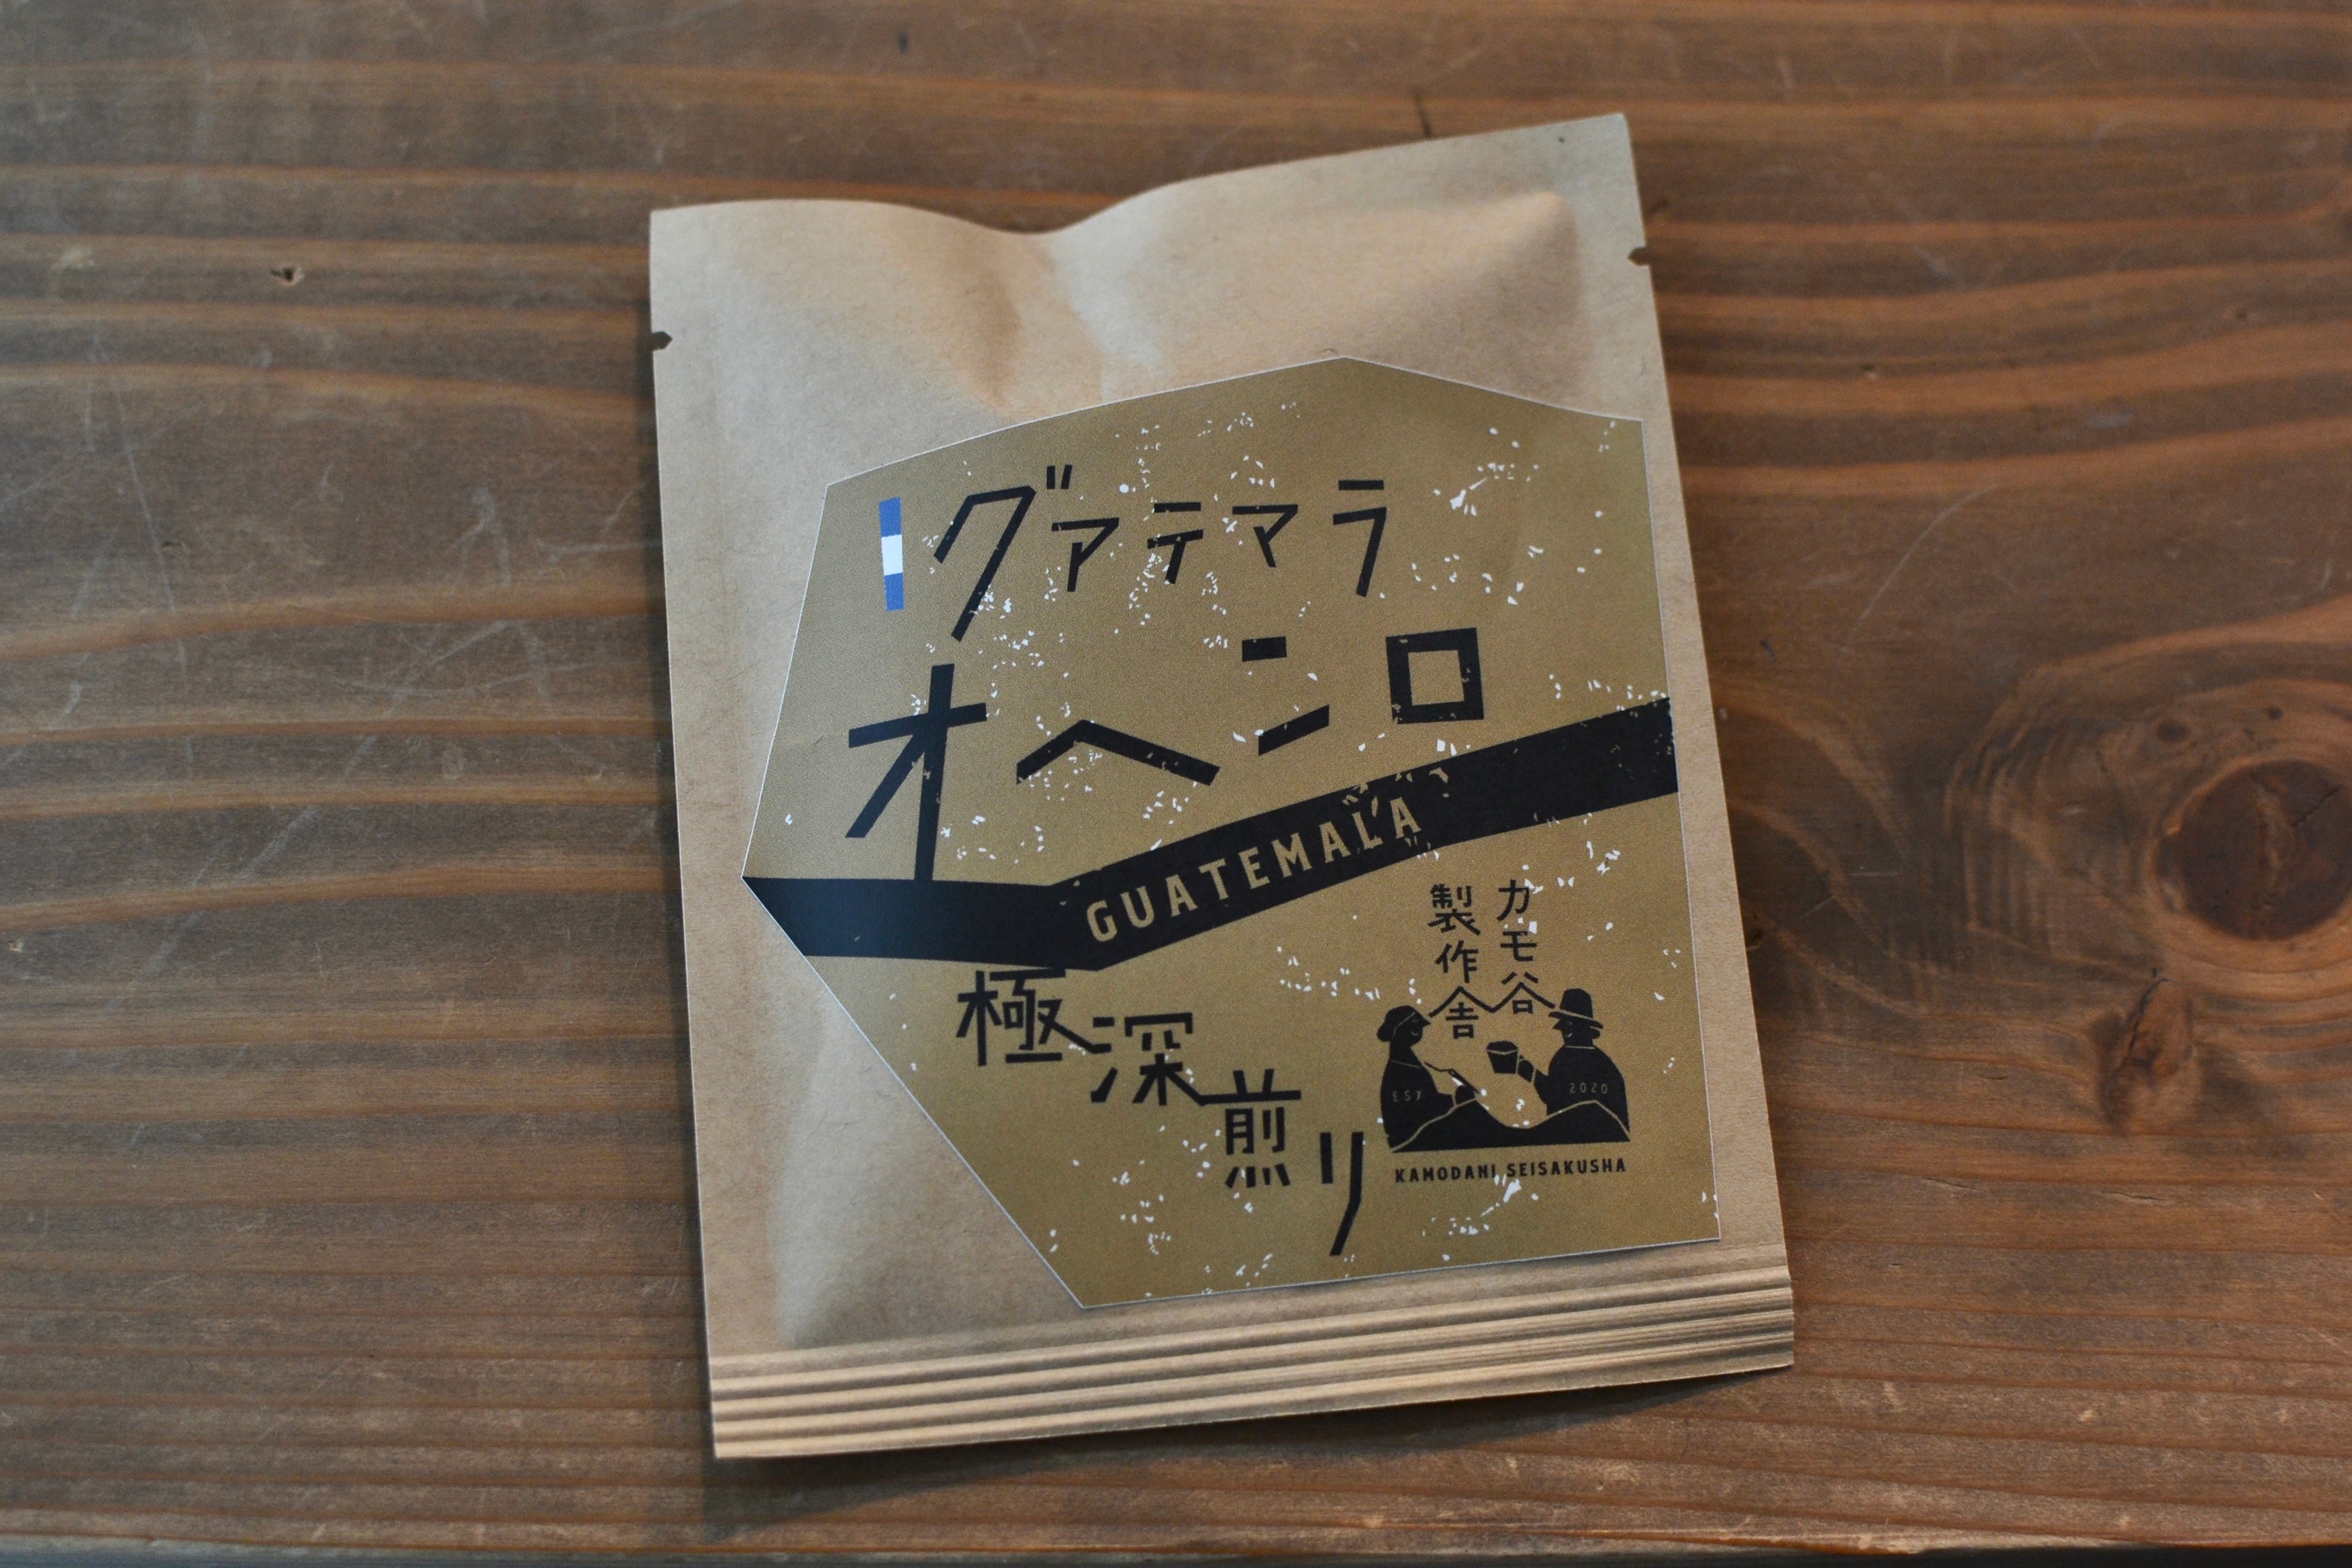 【焙煎コーヒードリップバッグ5種】バラエティ豊かなほんものが味わえる カモ谷製作舎のやさしいコーヒー